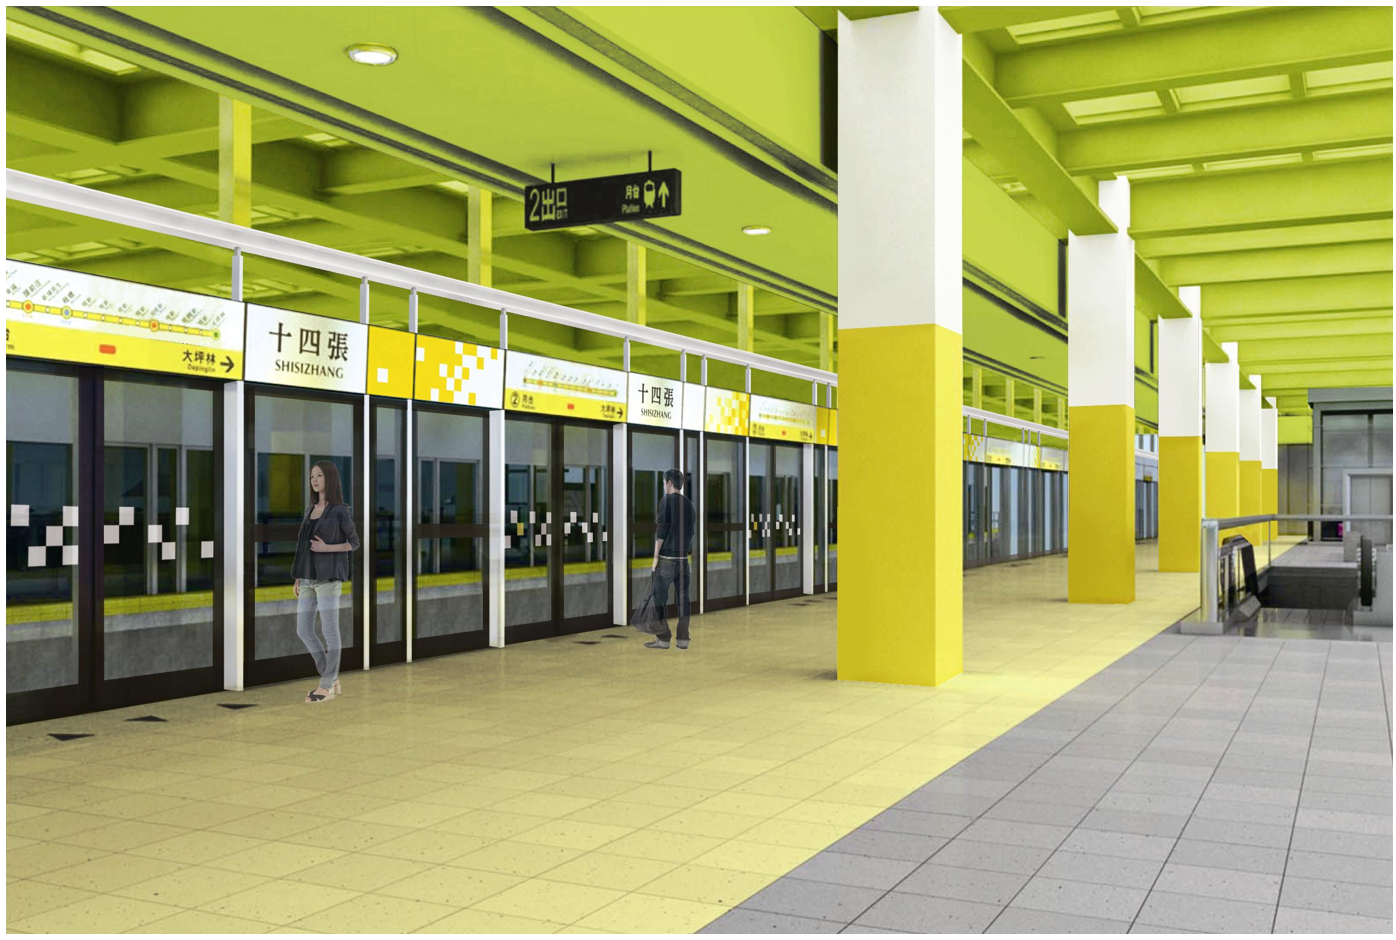 全國第一條彩色捷運-環狀線十四張車站模擬示意圖